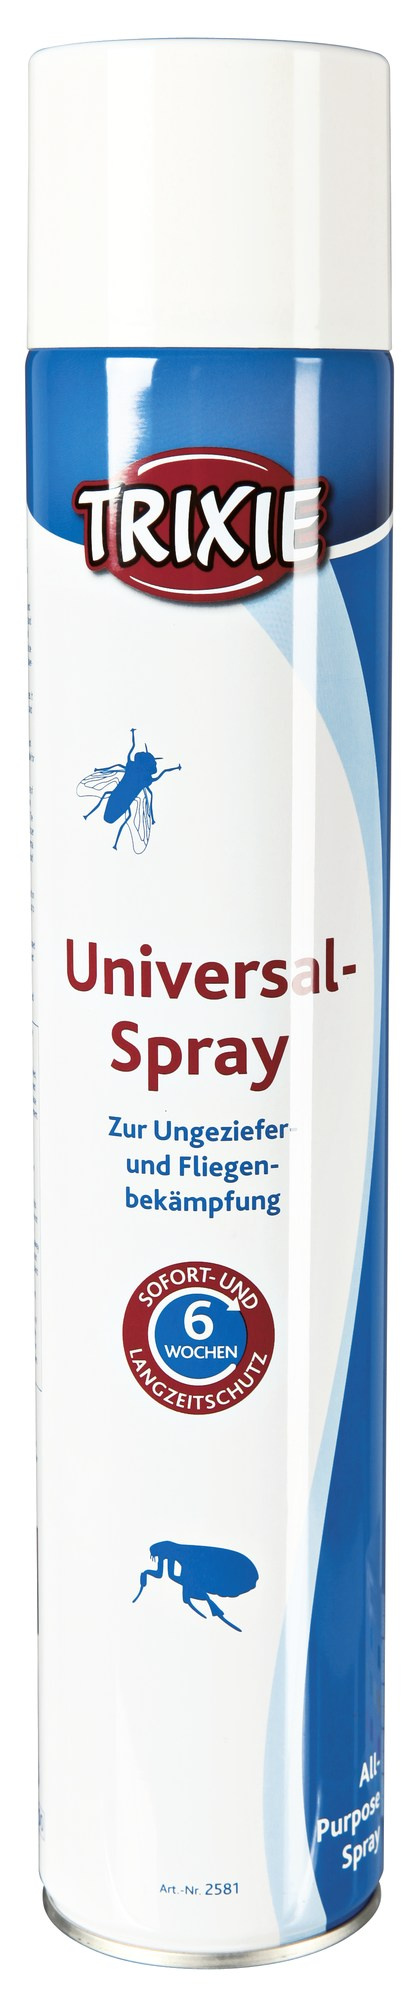 Spray Insecticid pentru Mediul Inconjurator 750 ml 2581 petmart